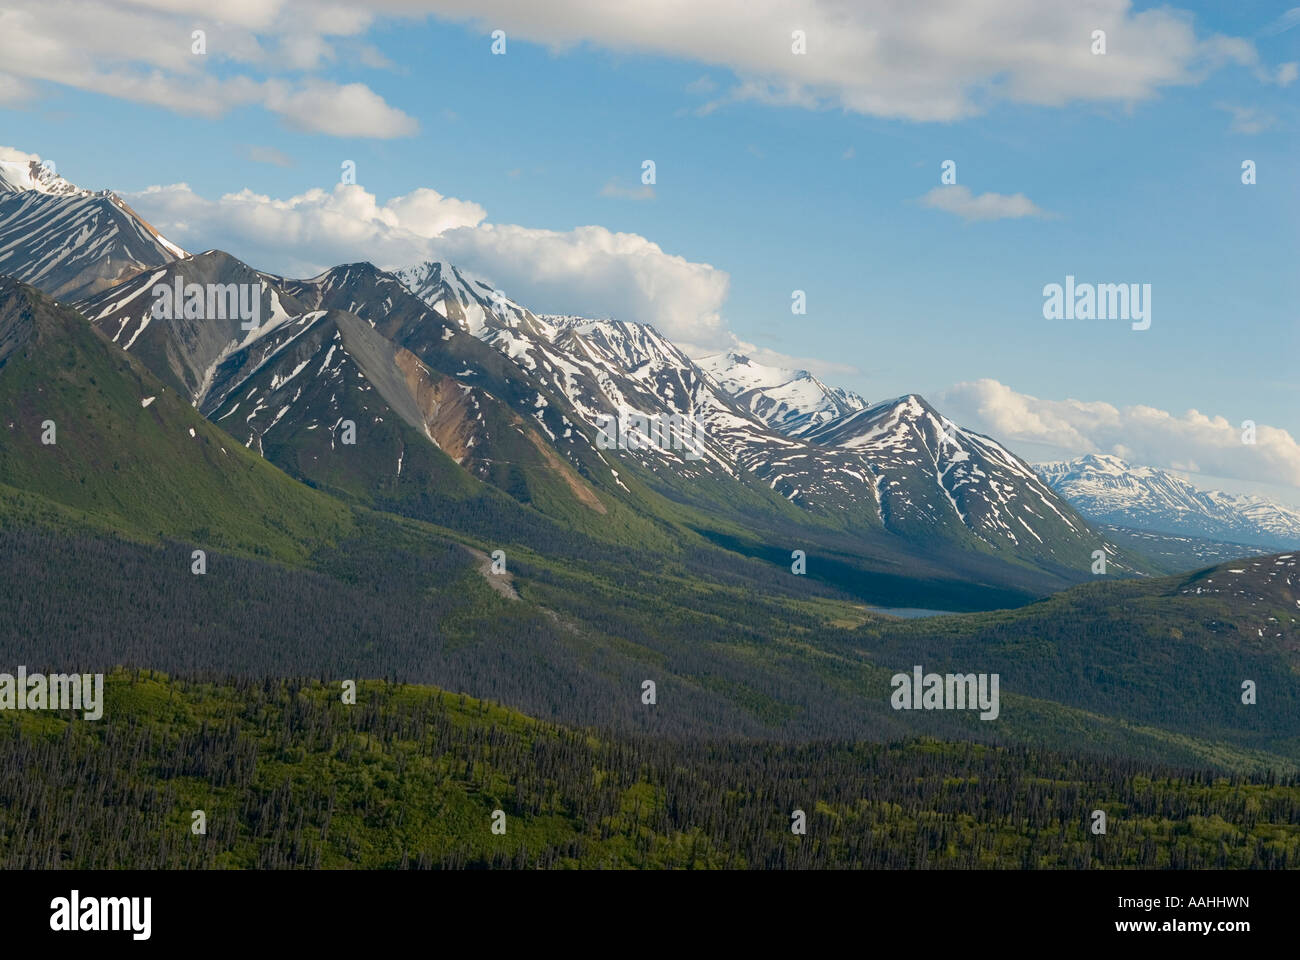 La gamme St Elias dans le parc national Kluane, Yukon Canadad Banque D'Images